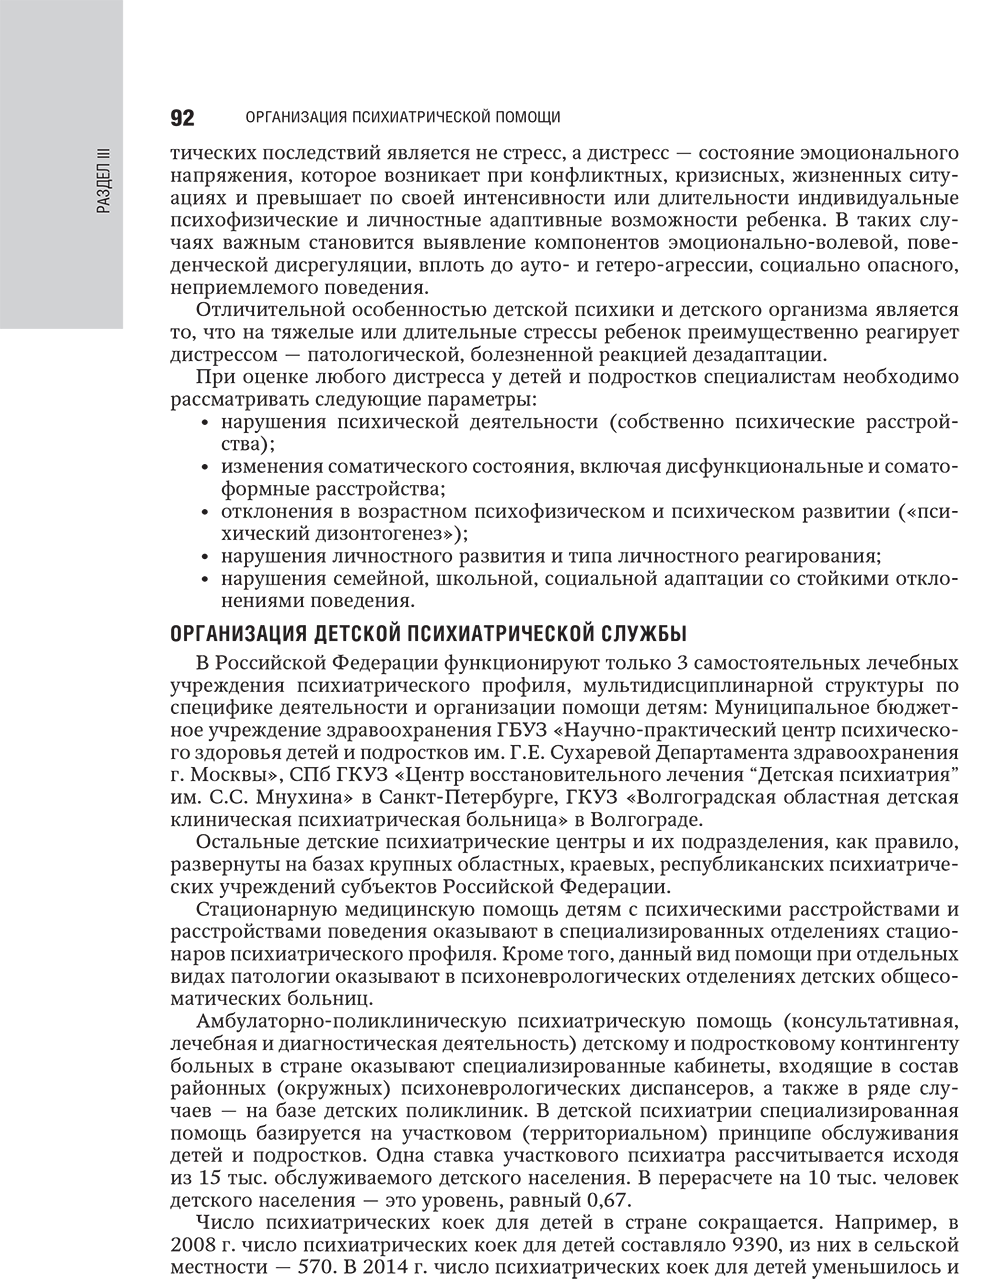 Пример страницы из книги "Психиатрия: национальное руководство" - Ю. А. Александровский, Н. Г. Незнанова